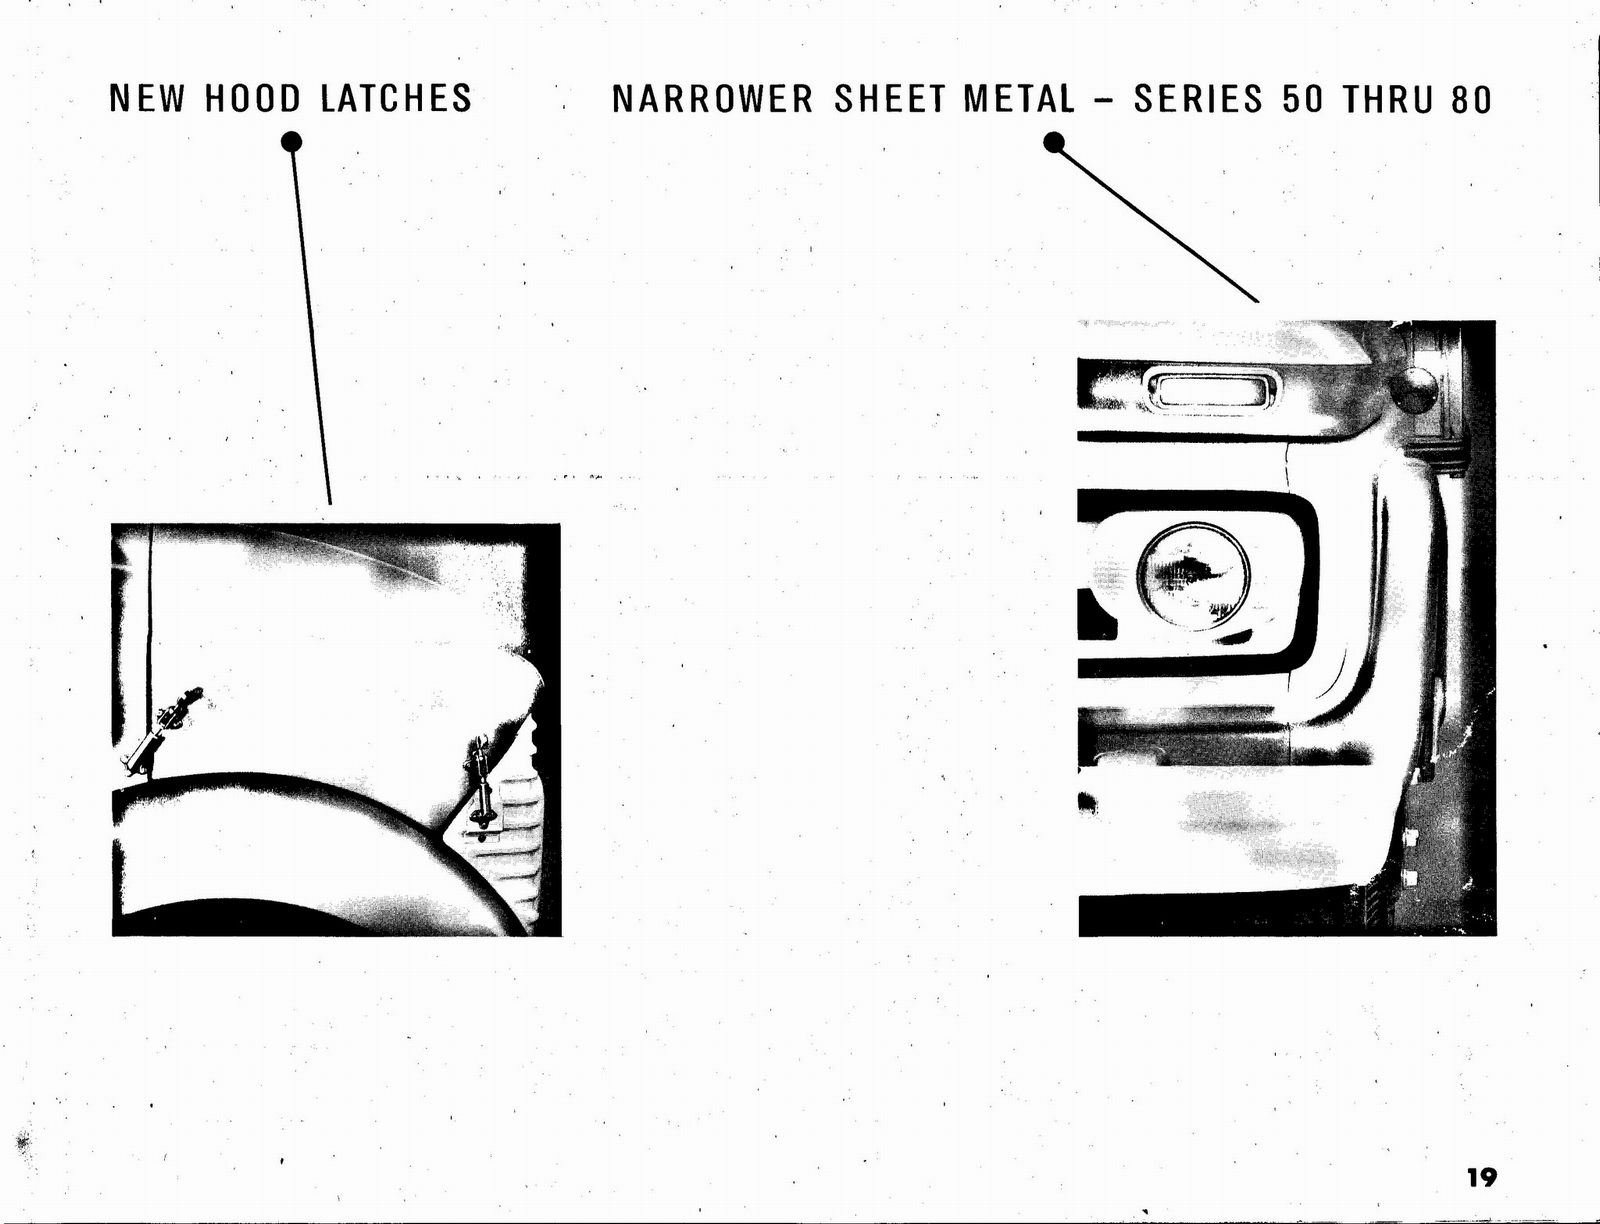 n_1963 Chevrolet Truck Engineering Features-19.jpg